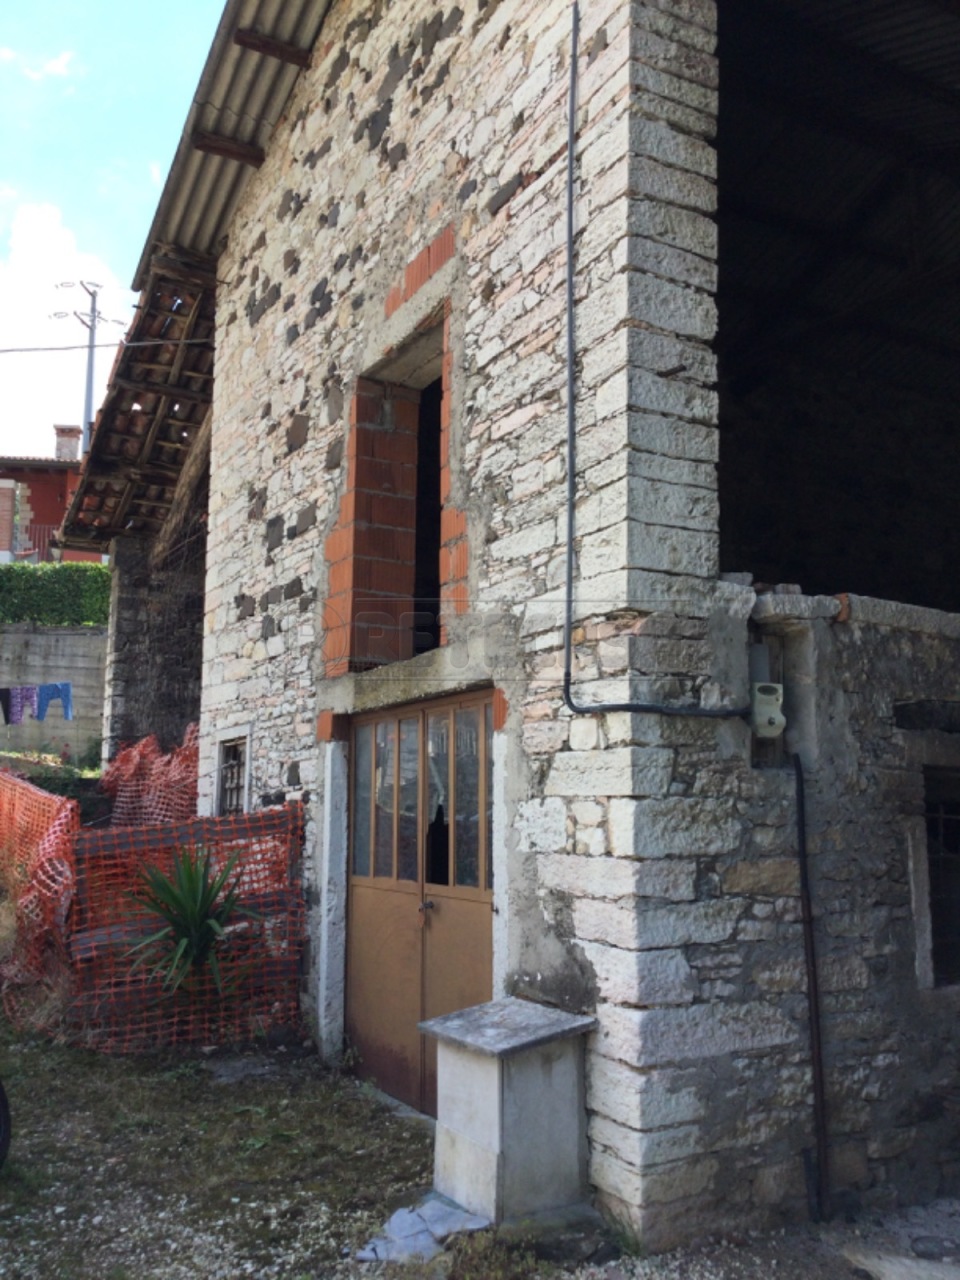 Rustico / Casale in vendita a Chiampo, 2 locali, prezzo € 30.000 | PortaleAgenzieImmobiliari.it